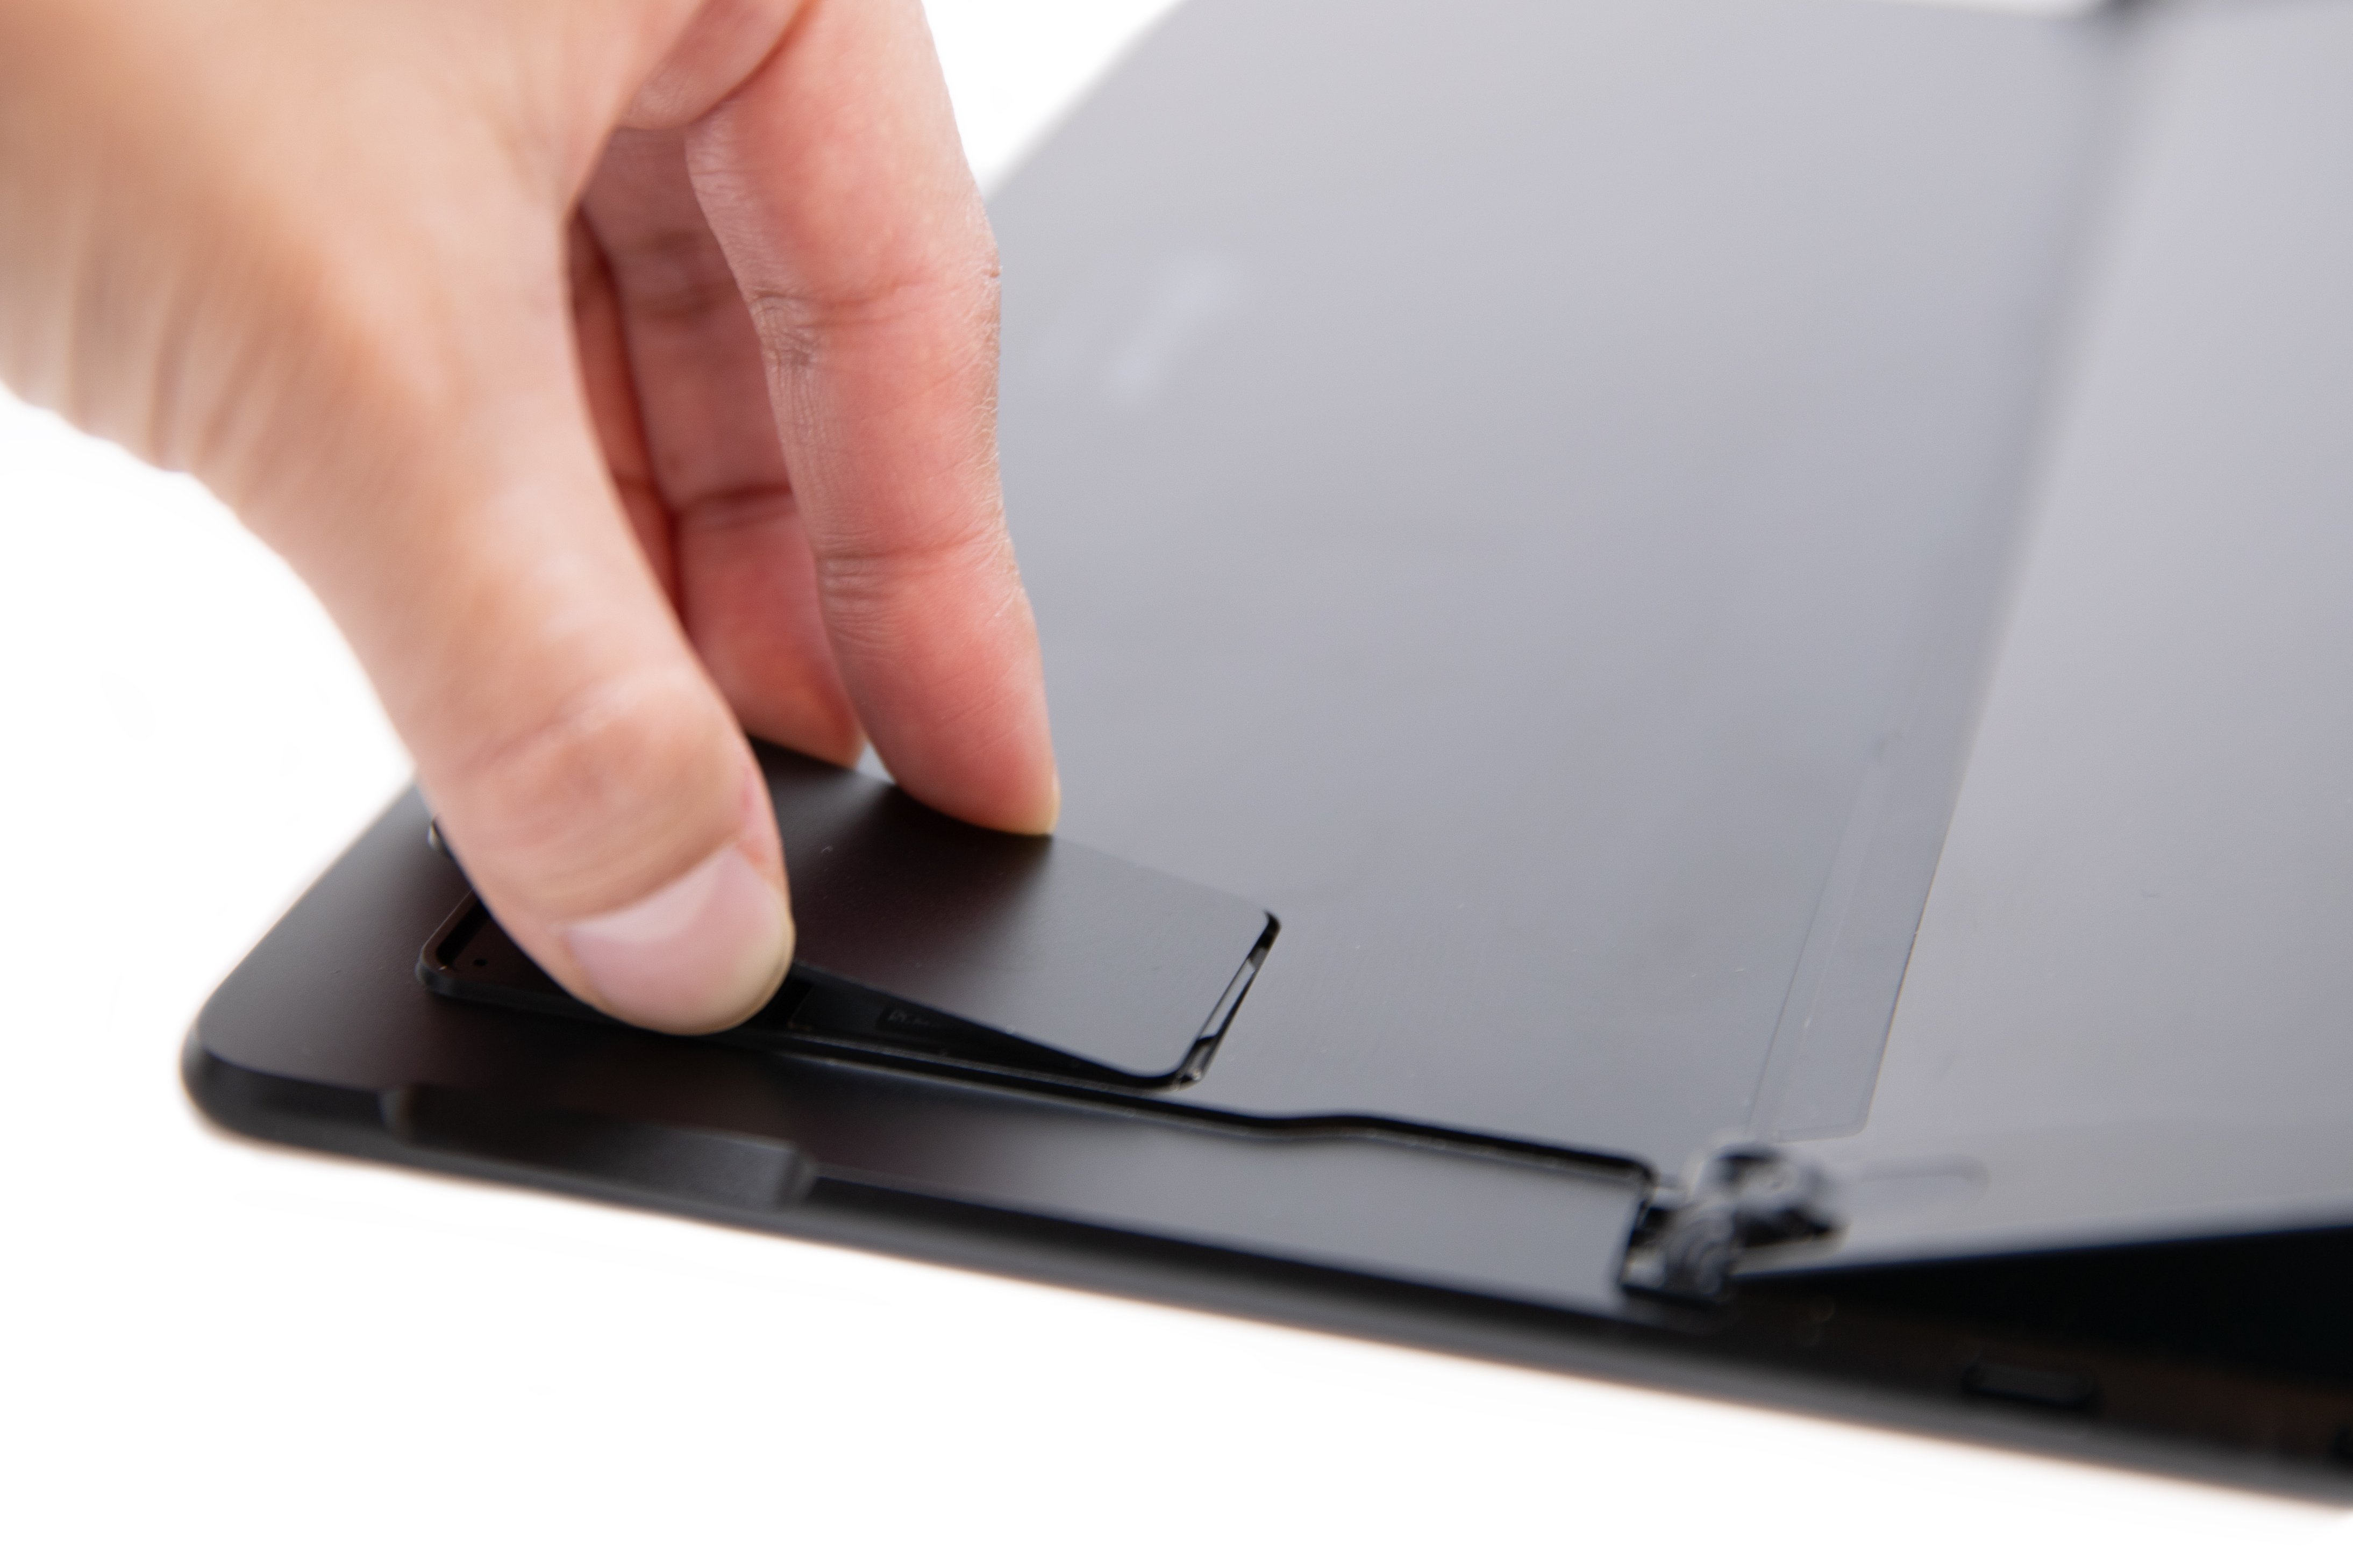 Henkilö liu’uttaa Surface Pro X:n SIM-kortin luukun alkuperäiseen asentoon.